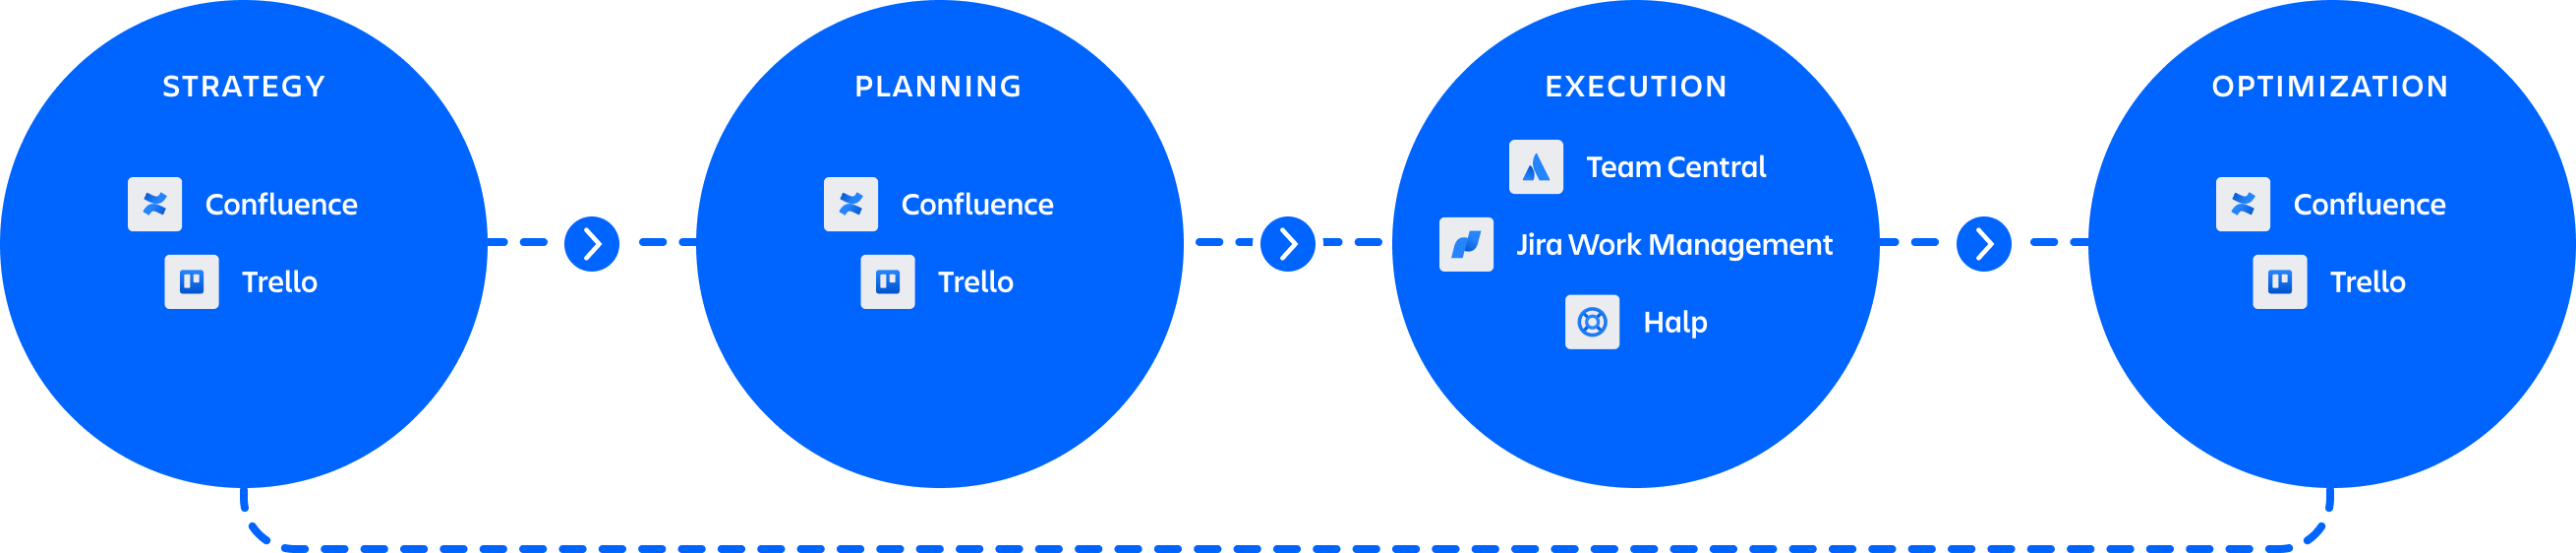 Grafik mit den Produkten für den Bewerbungsprozess (Confluence und Jira Work Management) und Produkten für das Onboarding (Trello und Jira Work Management)